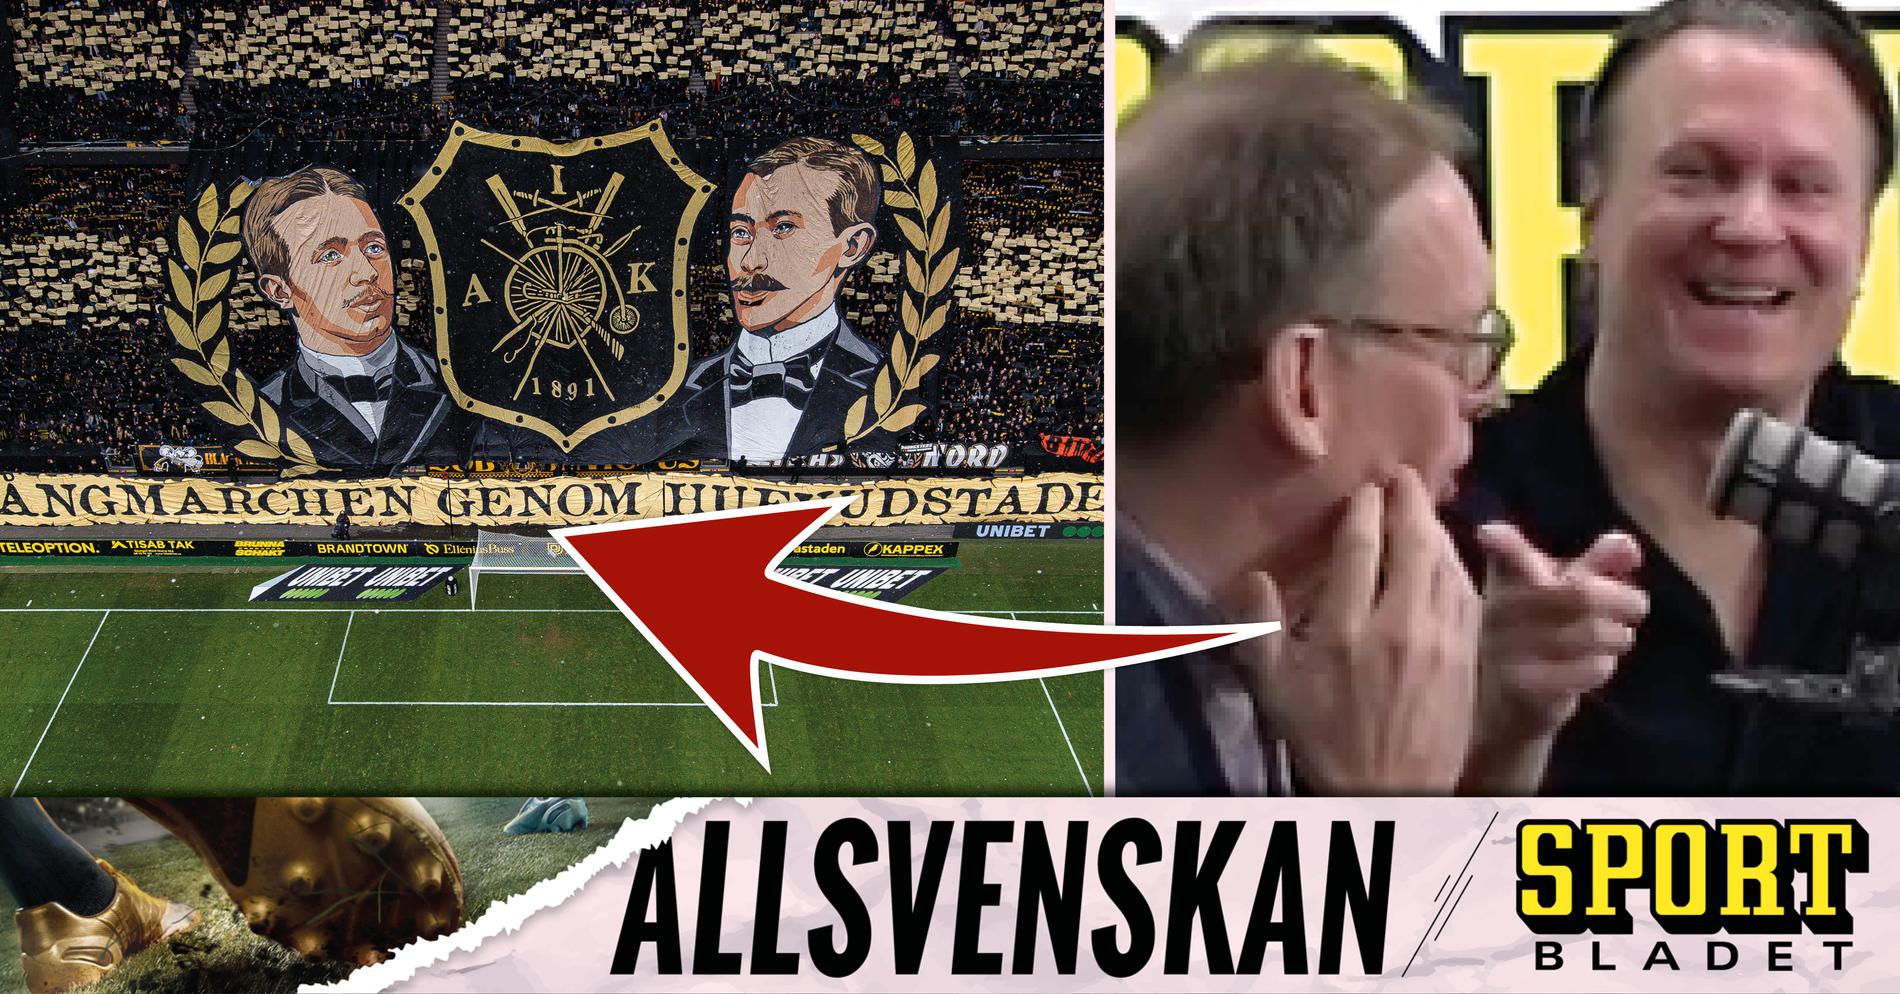 Djurgården Fotboll: Pinsamma tabben (?) i AIK:s tifo mot Djurgården • Podden Sportbladet Allsvenskan med nytt avsnitt